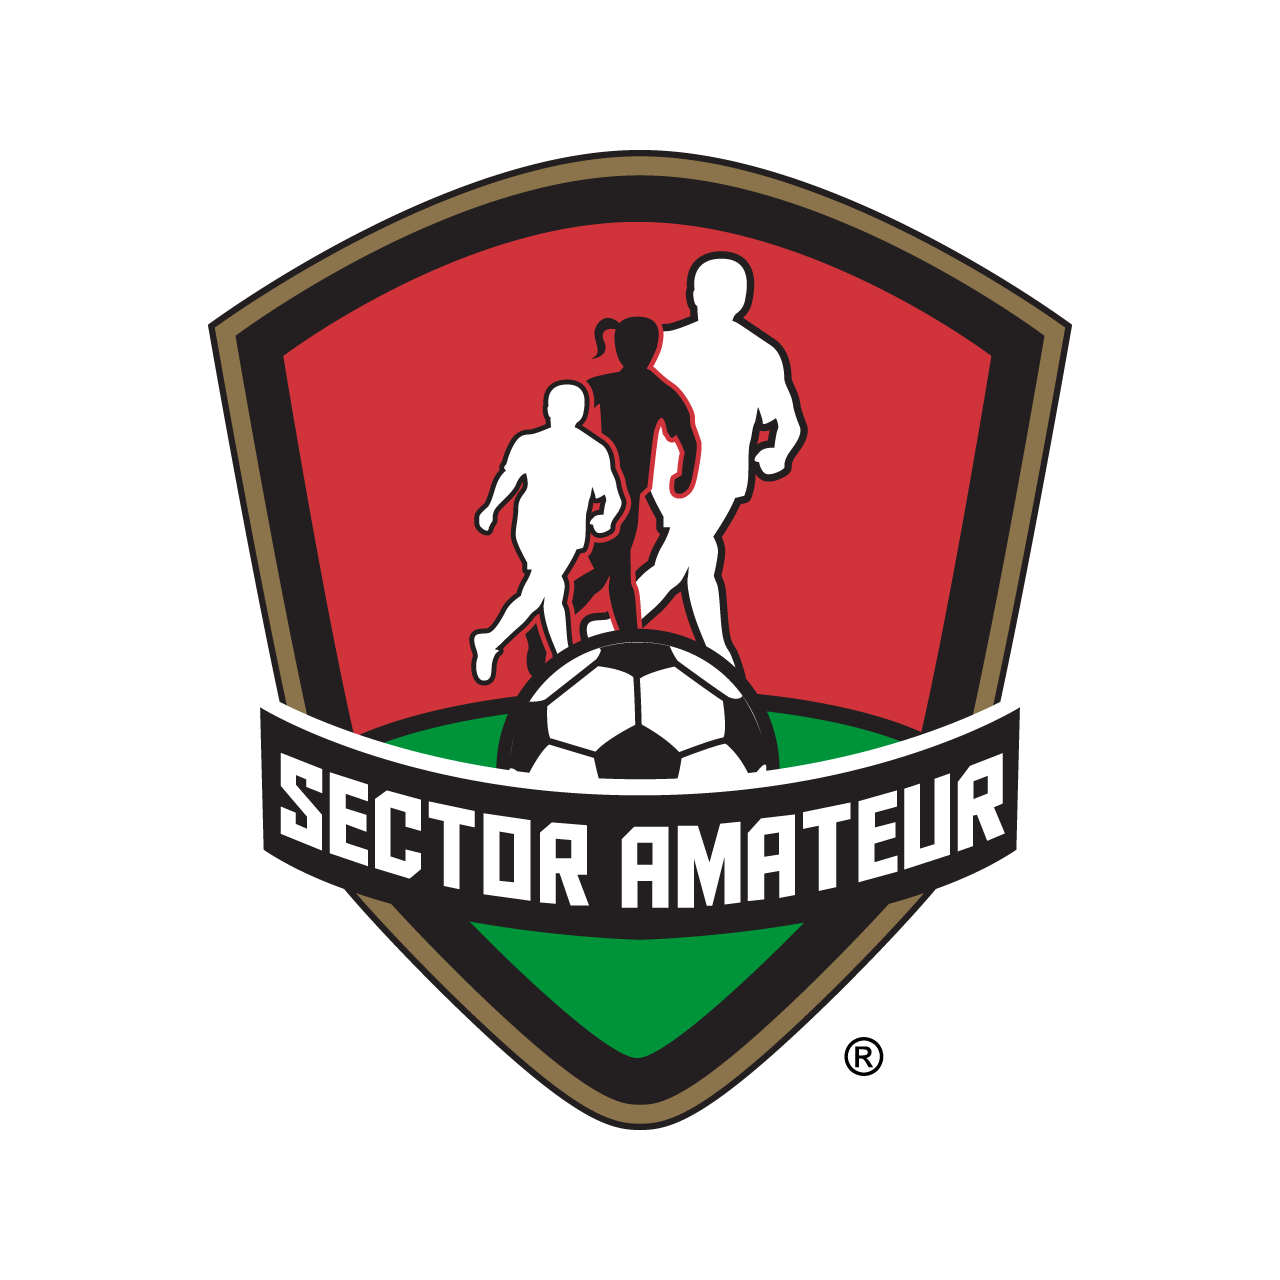 Sector Amateur (FMF)